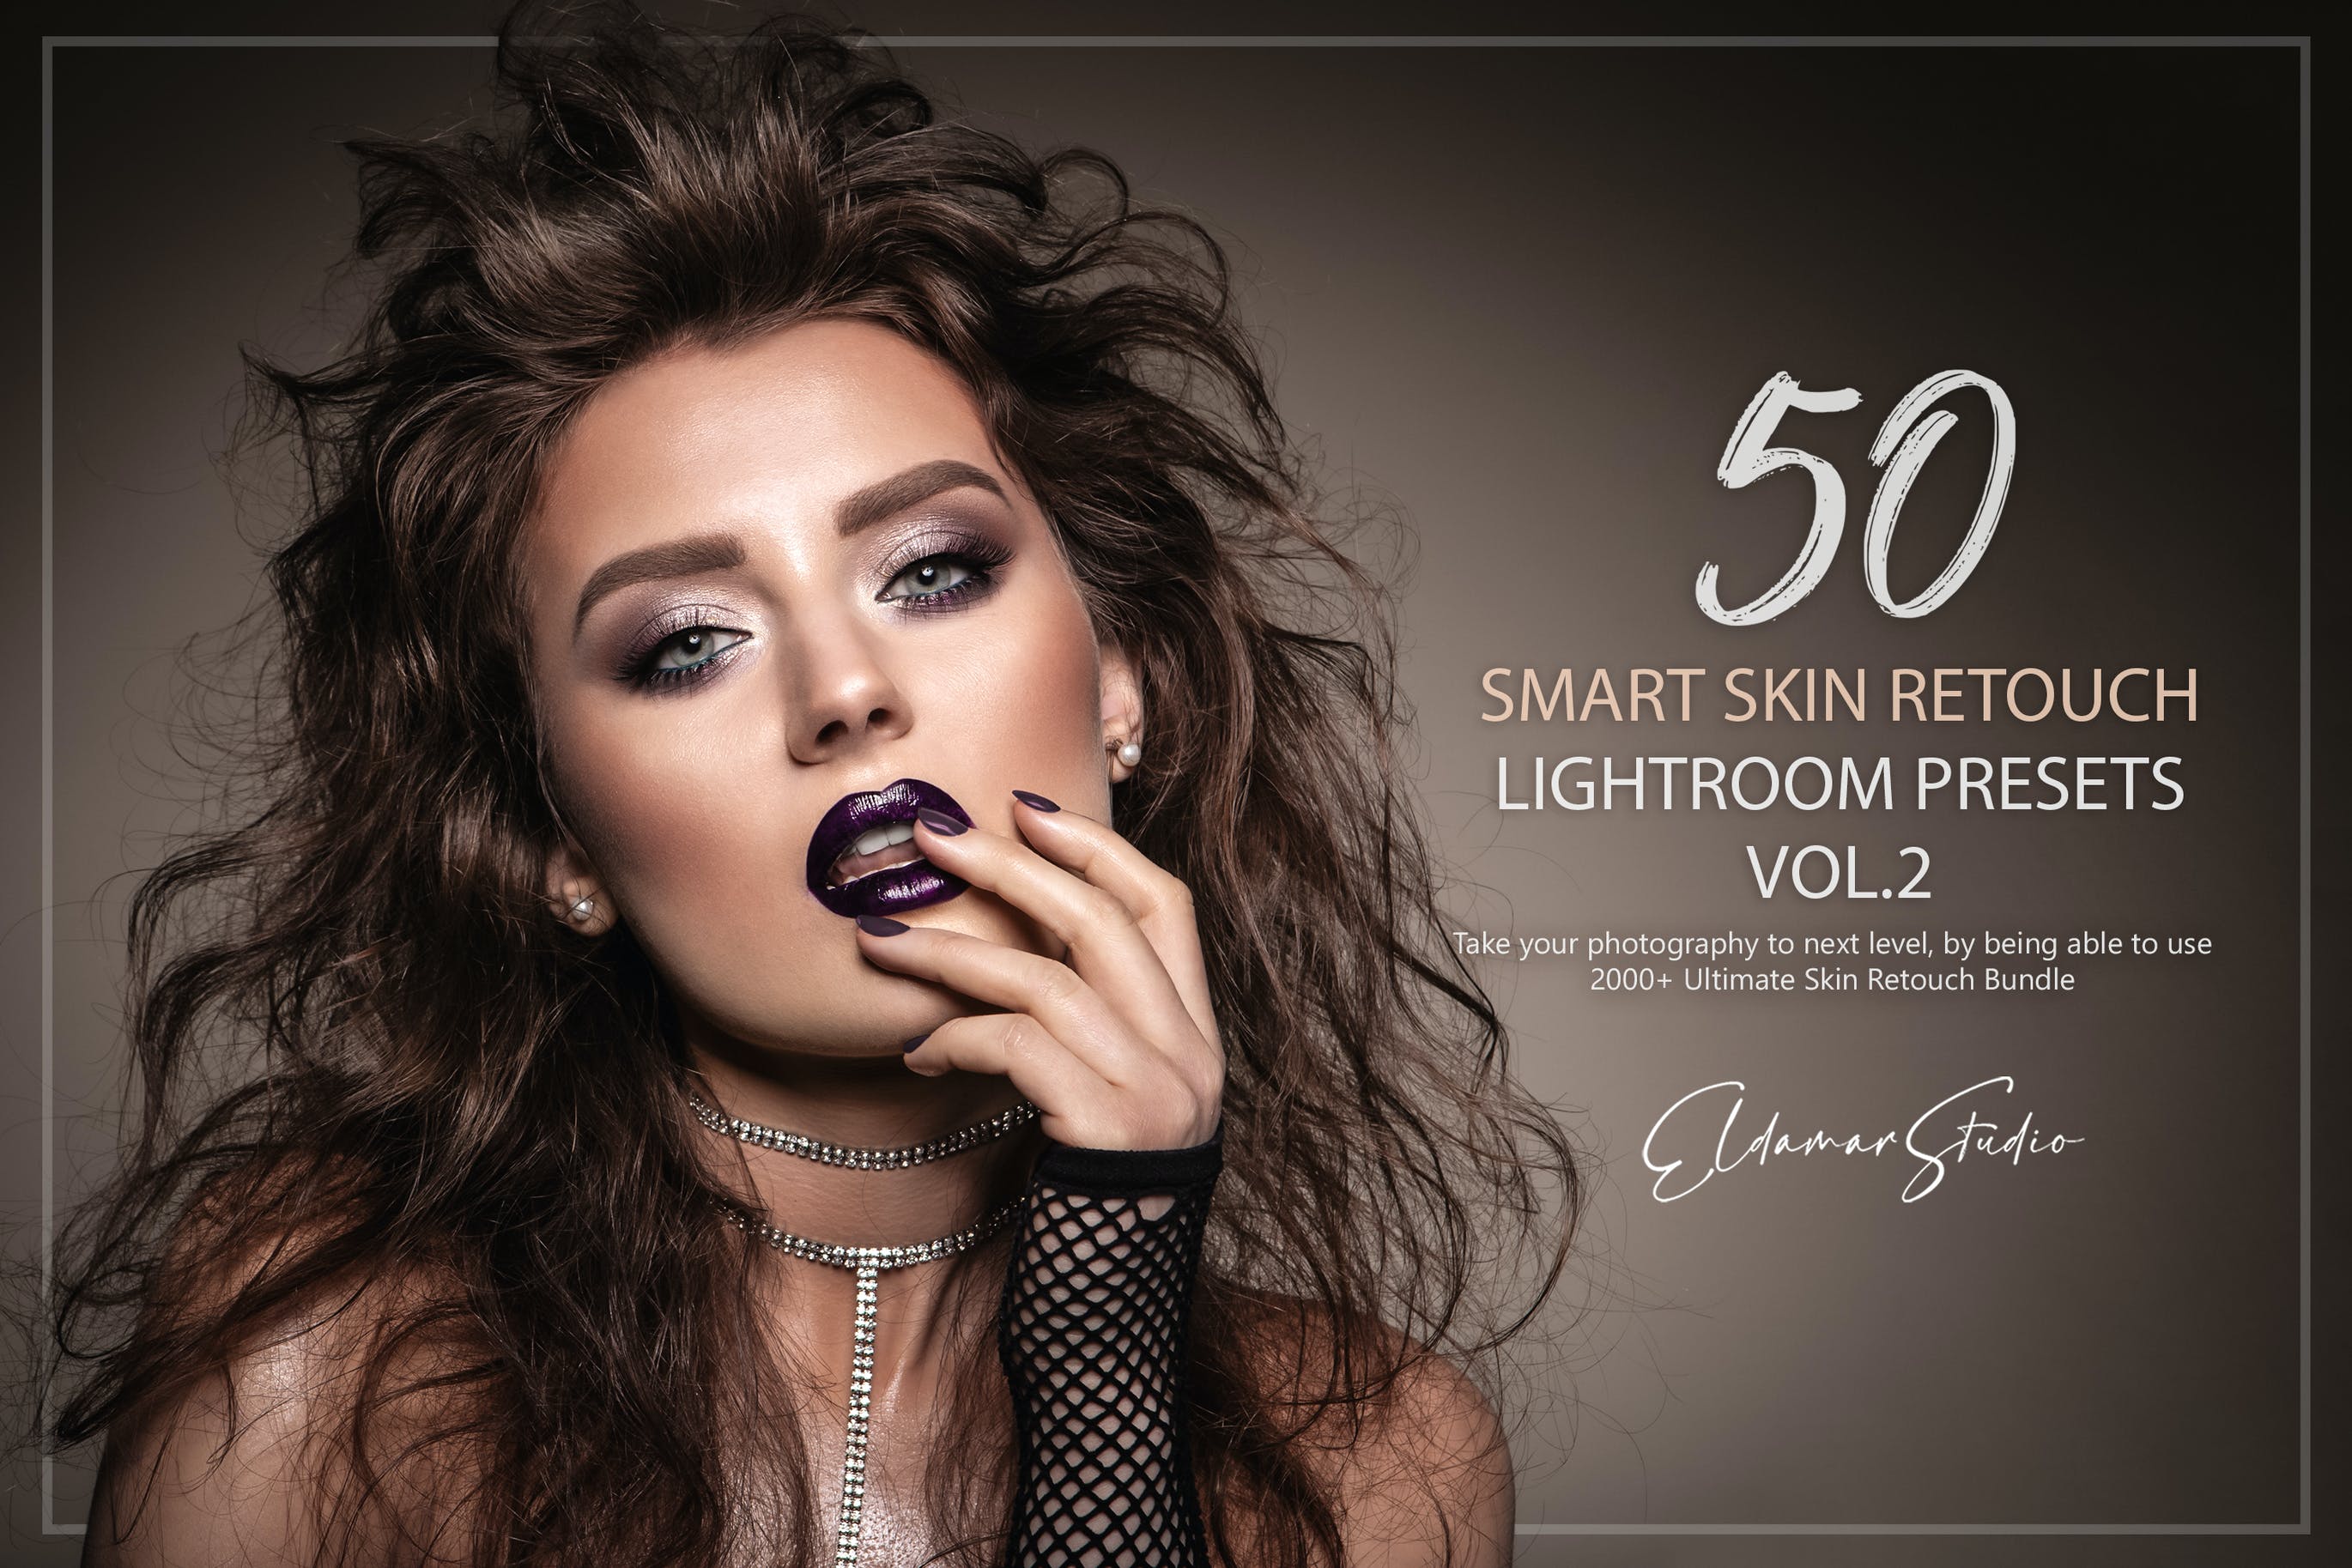 50个智能皮肤修饰照片调色滤镜LR预设v2 50 Smart Skin Retouch Lightroom Presets – Vol. 2 插件预设 第1张